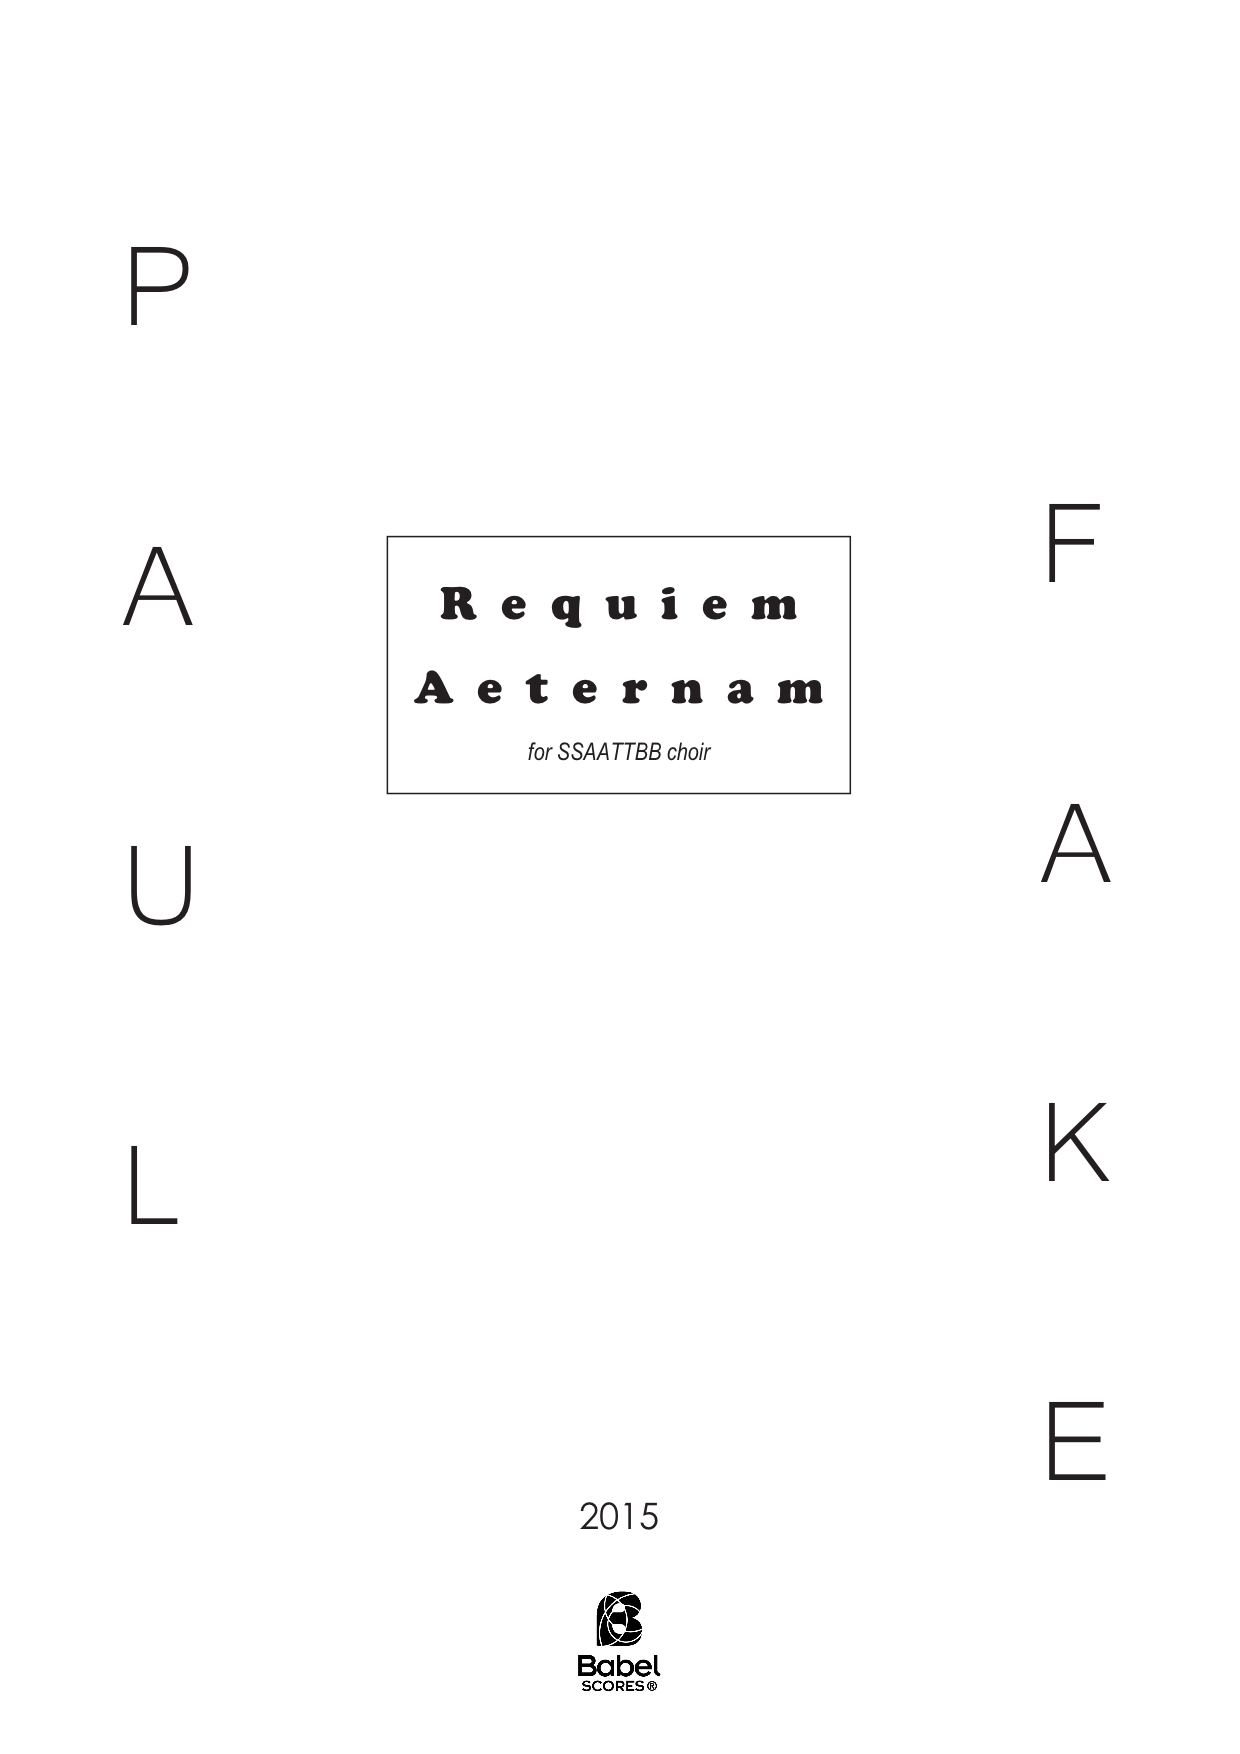 Requiem Aeternam A4 z 2 1 325